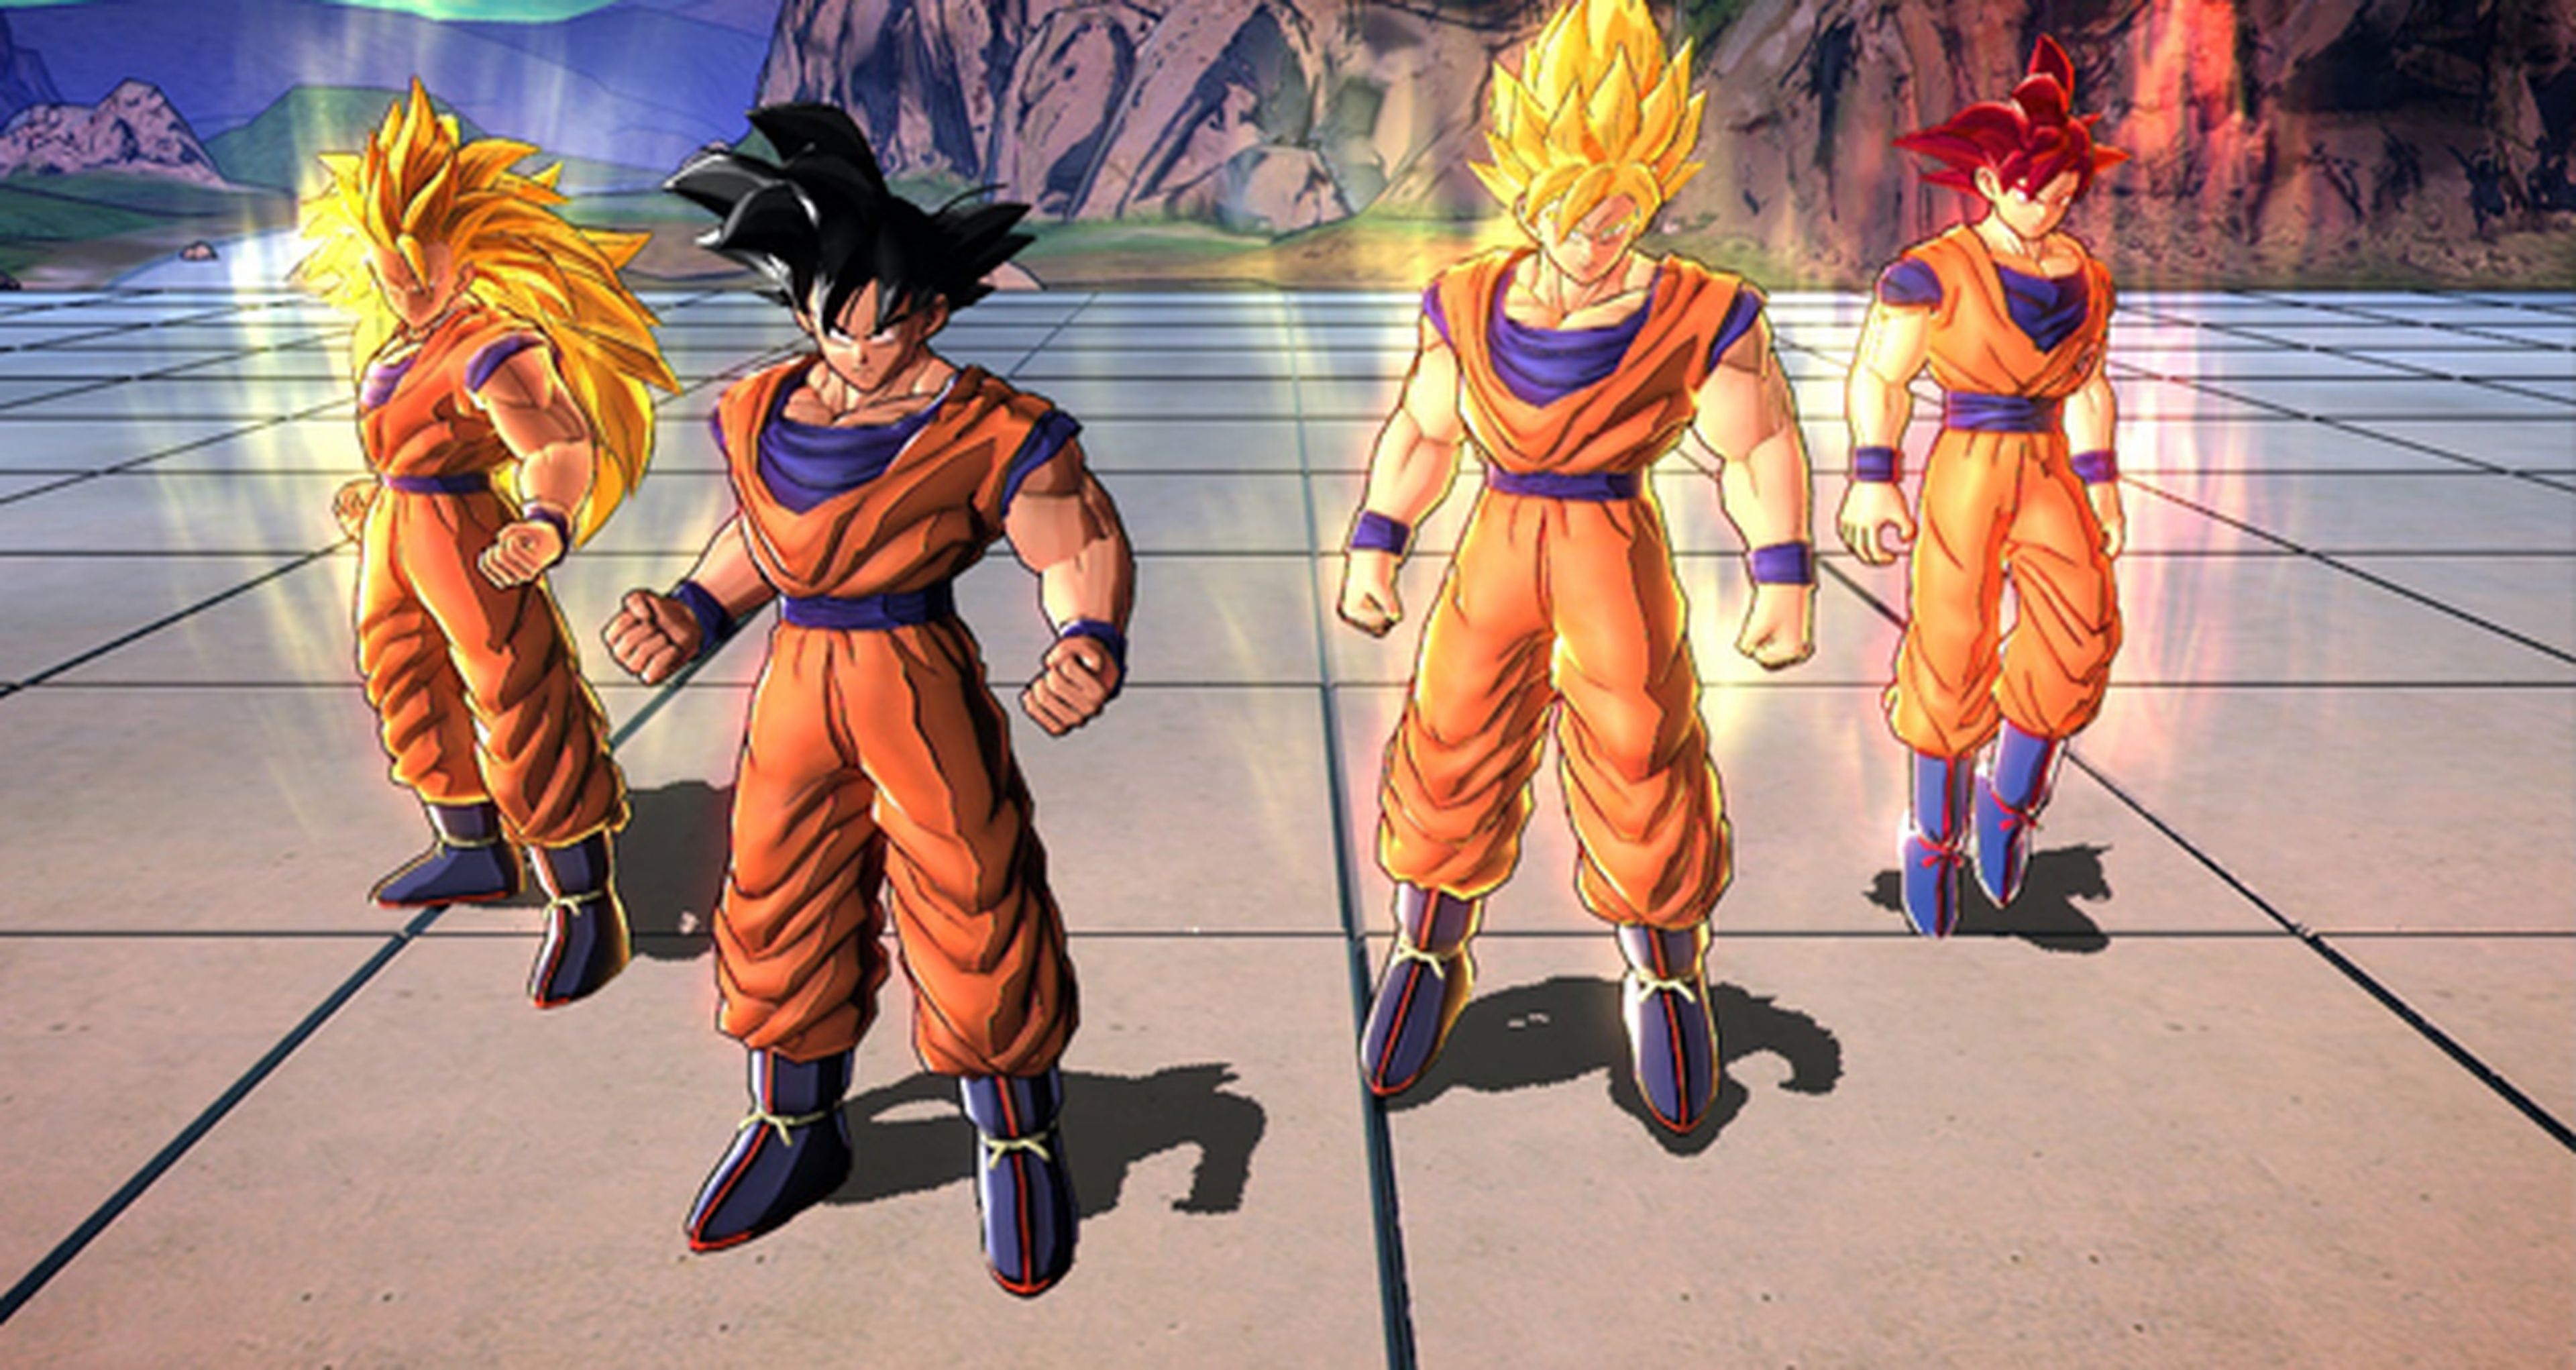 Anunciada la edición Goku para DBZ Battle of Z